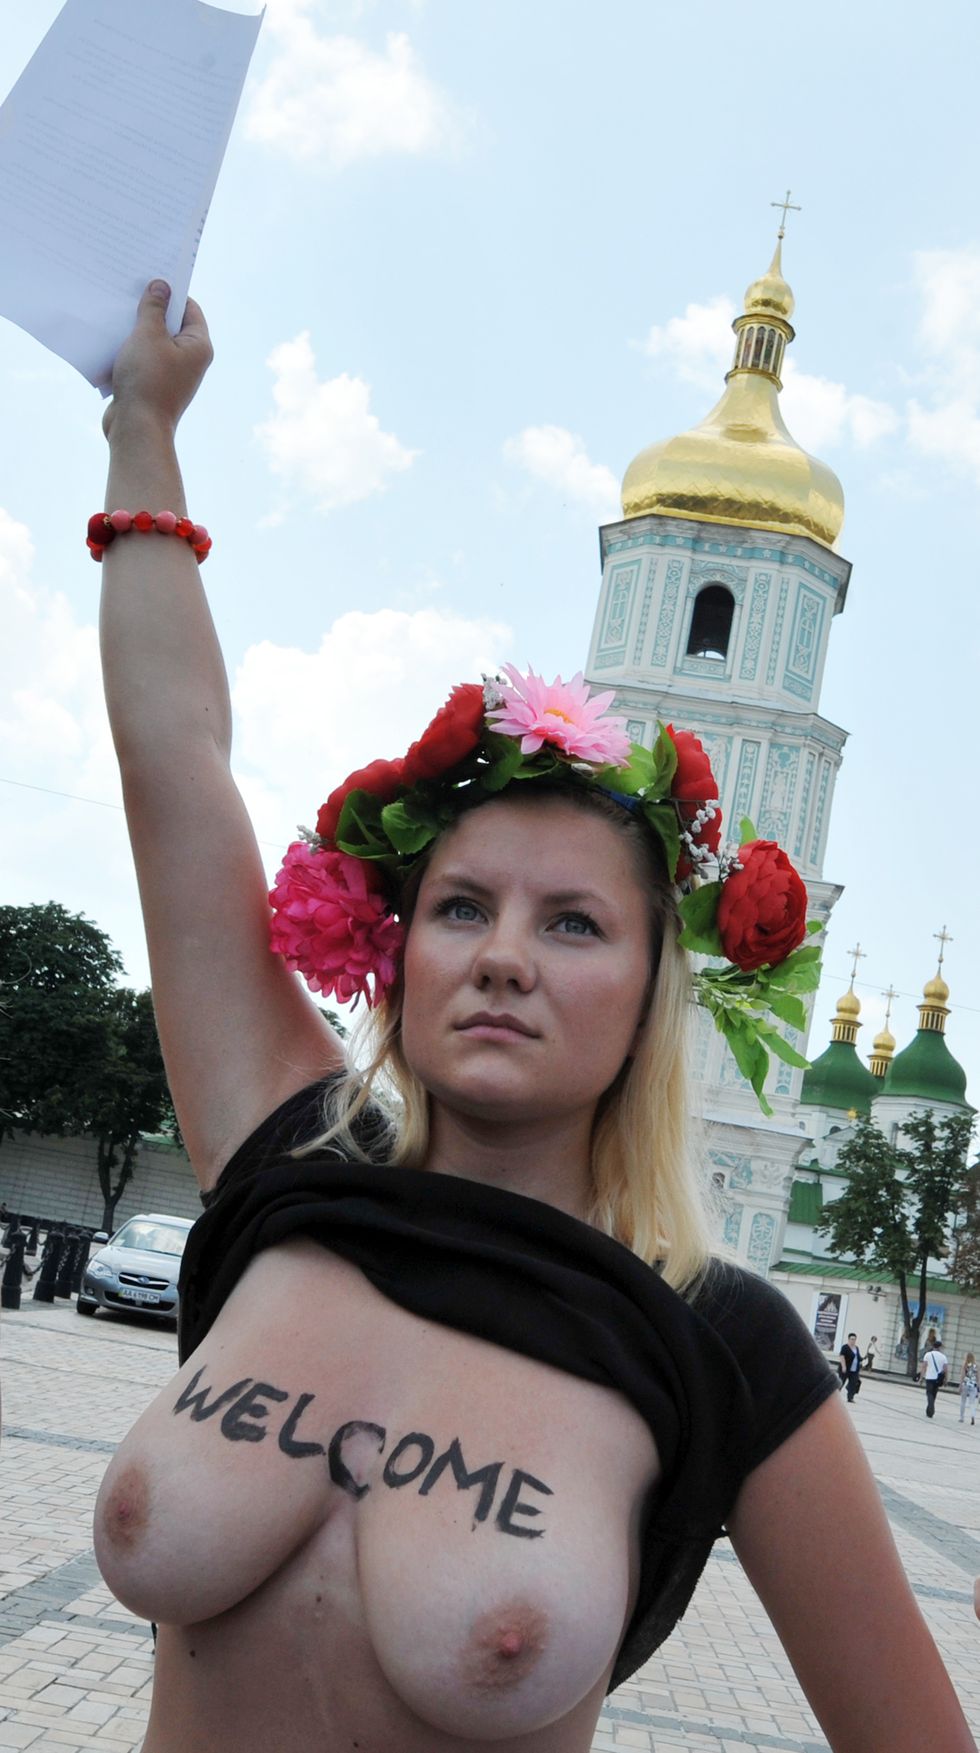 Il leader di Femen? Un uomo